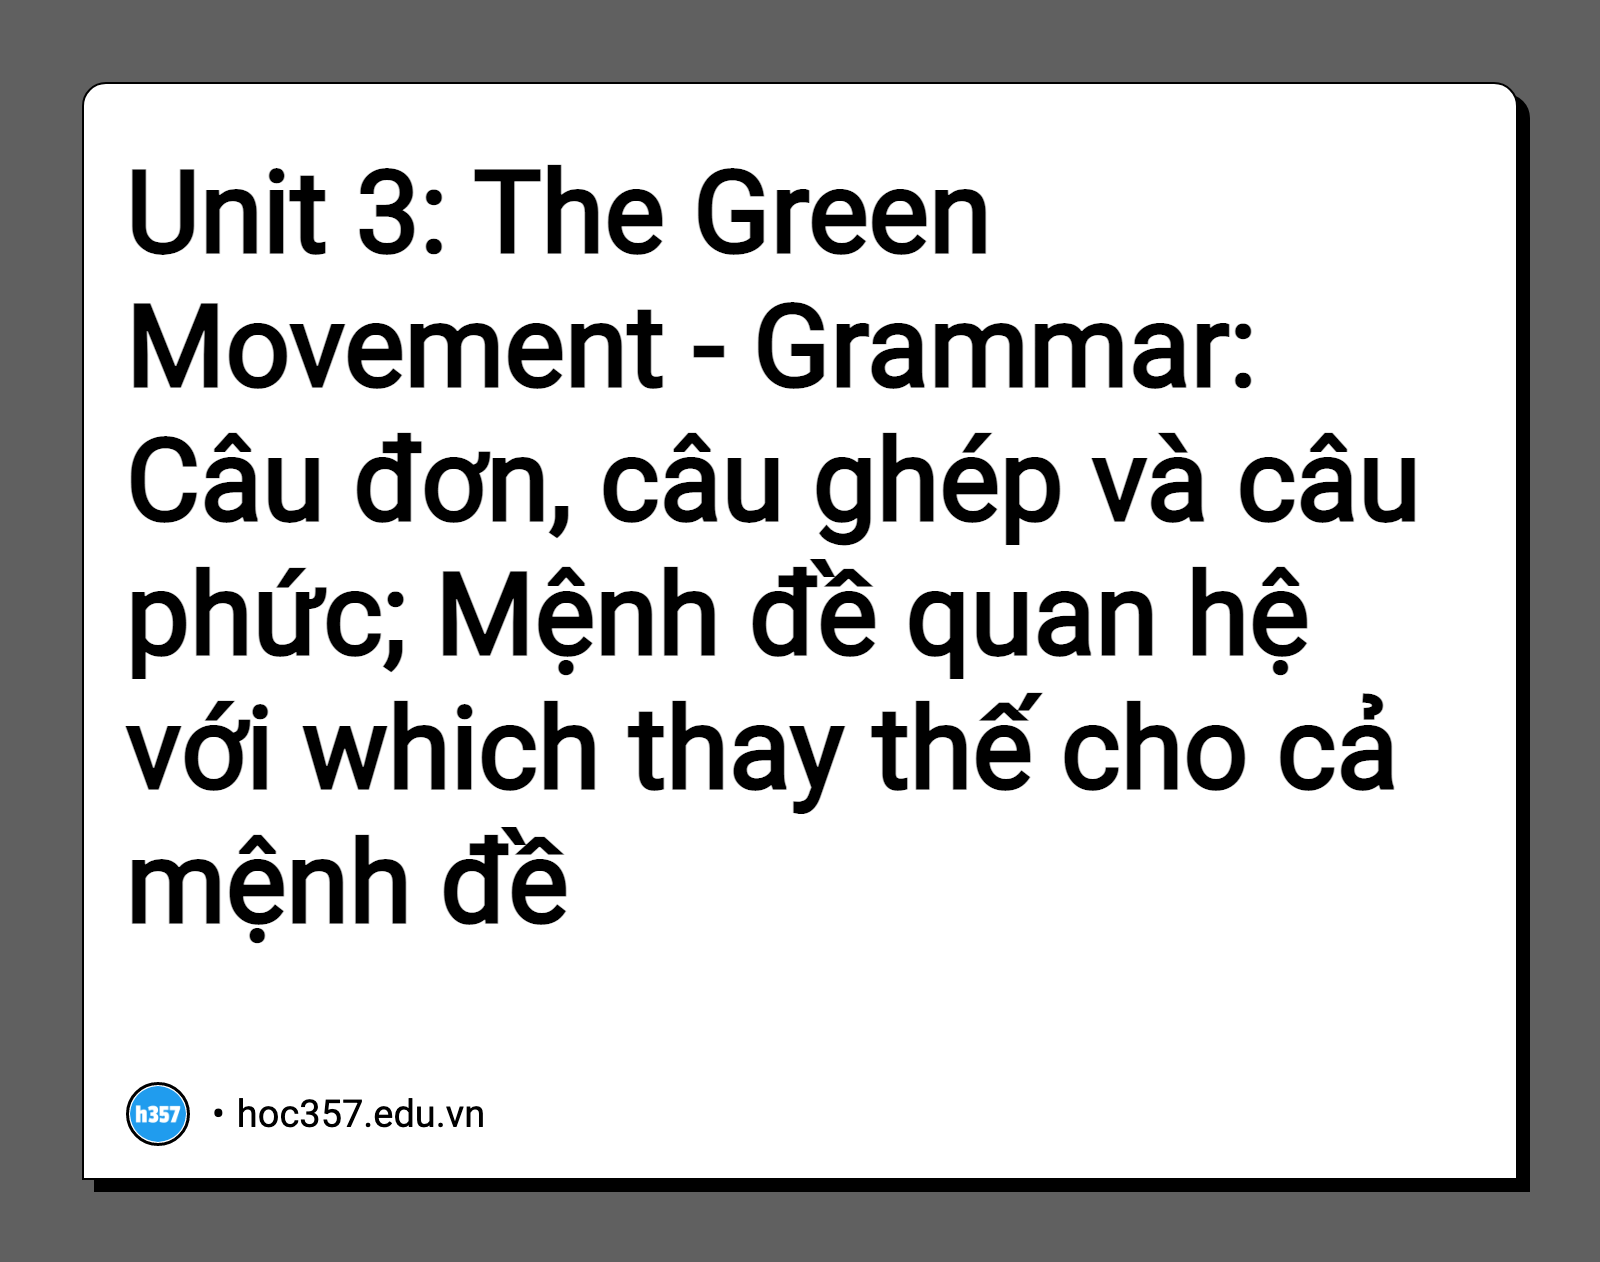 Hình minh họa Unit 3: The Green Movement - Grammar: Câu đơn, câu ghép và câu phức; Mệnh đề quan hệ với which thay thế cho cả mệnh đề